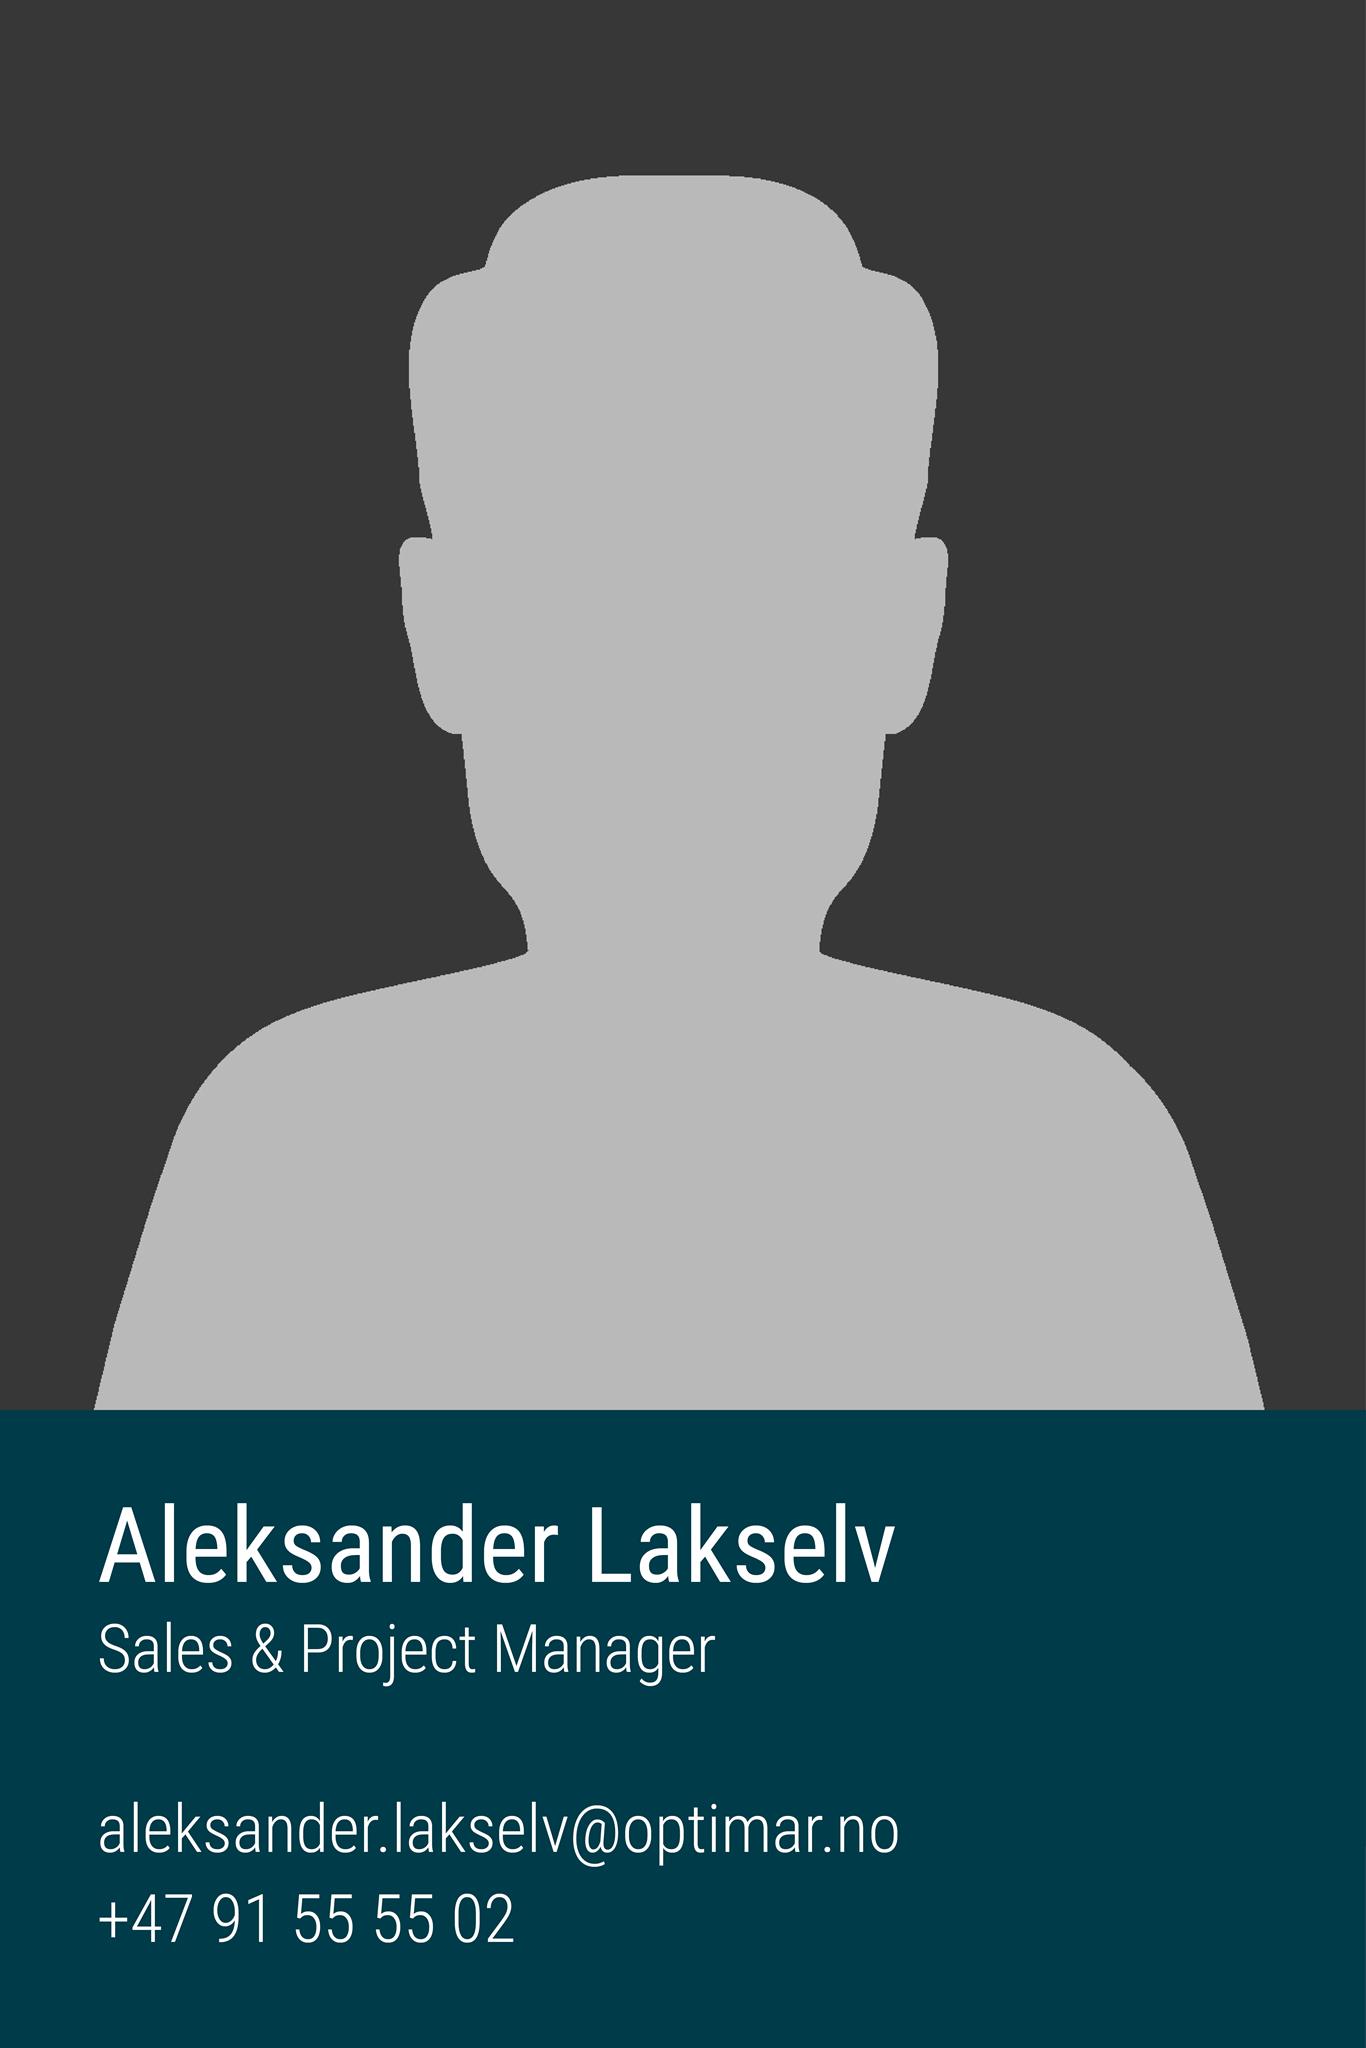 Aleksander Lakselv